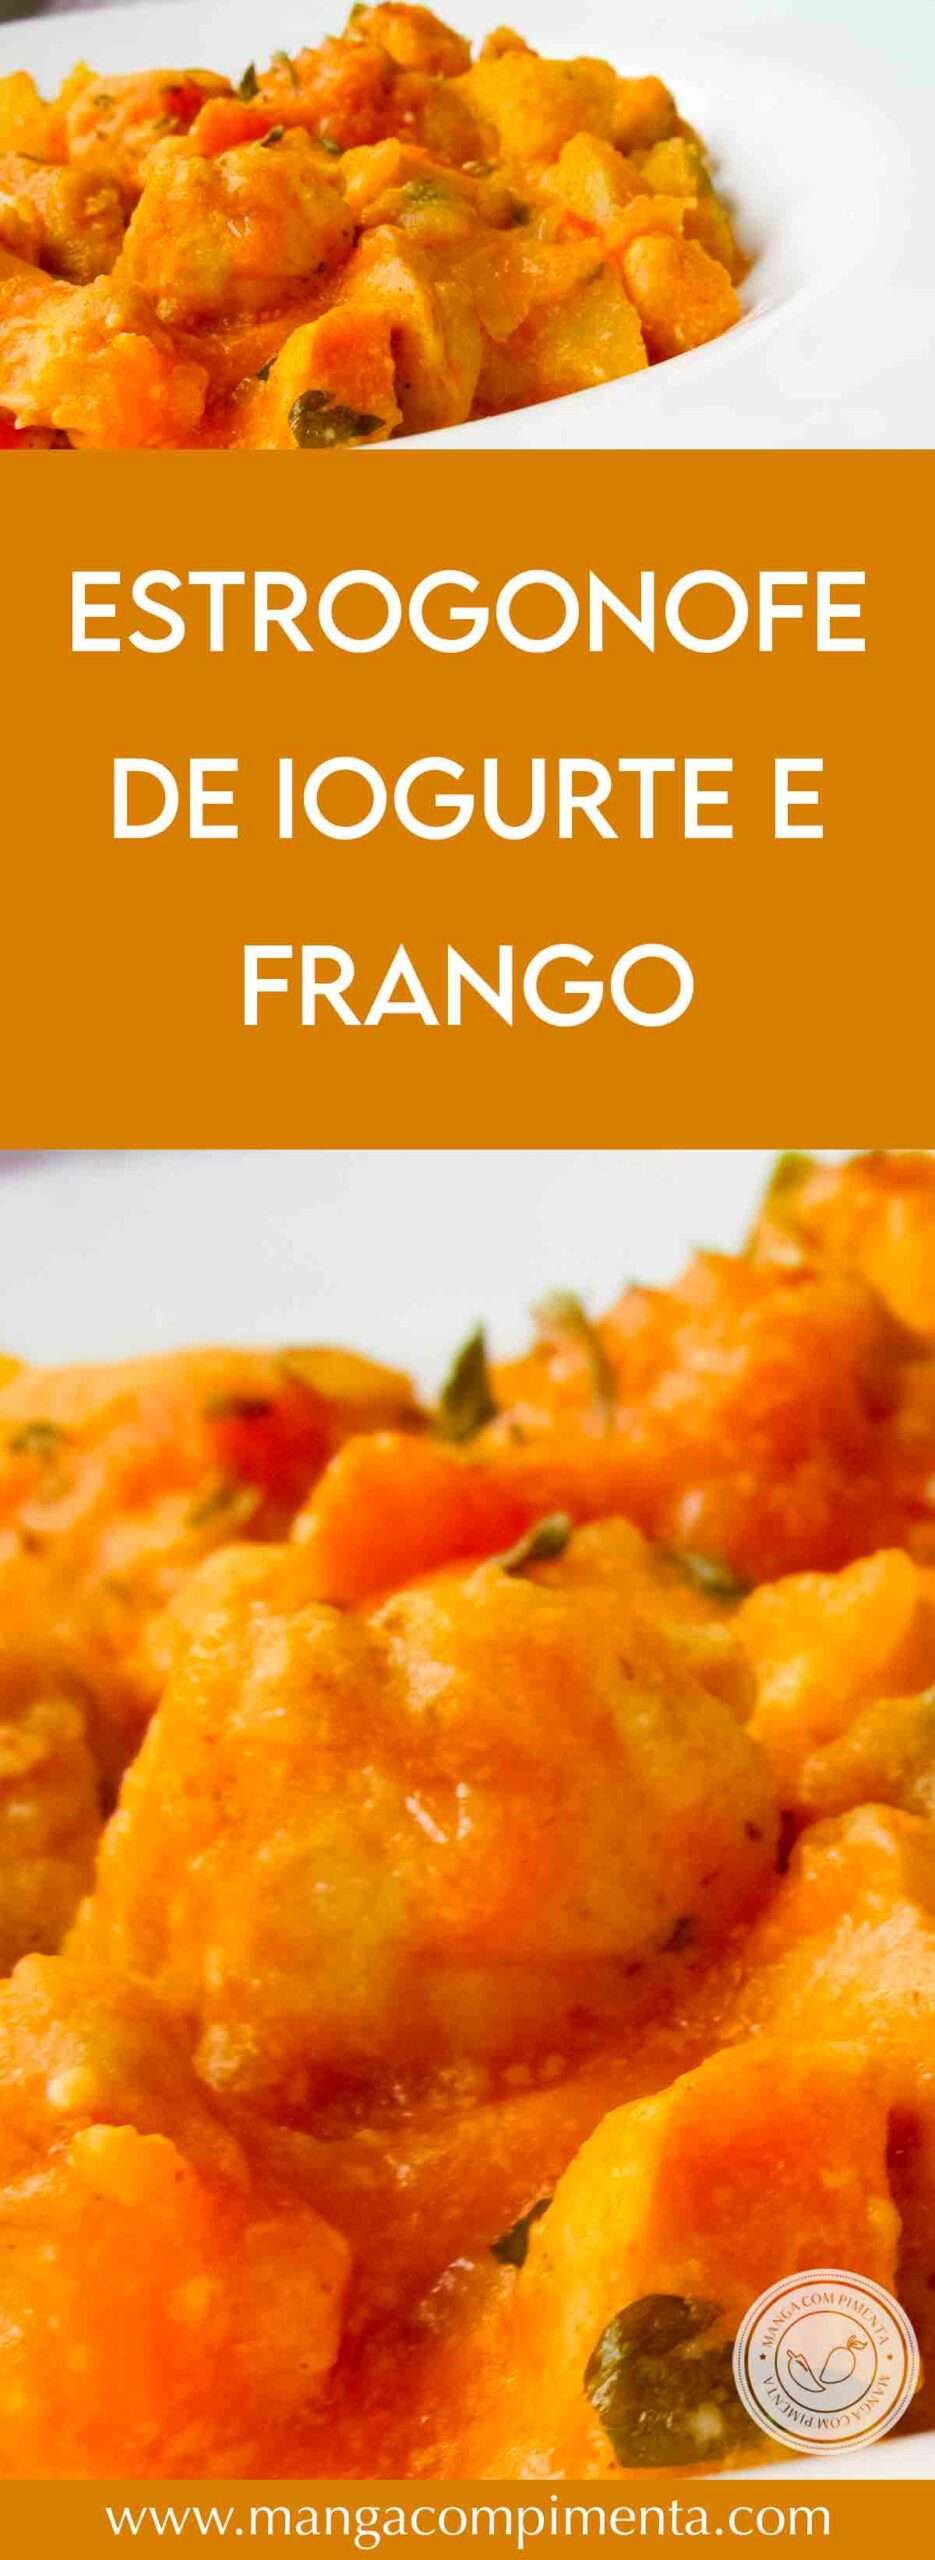 Receita de Estrogonofe de Iogurte e Frango - prepare um almoço fácil e delicioso nessa semana.